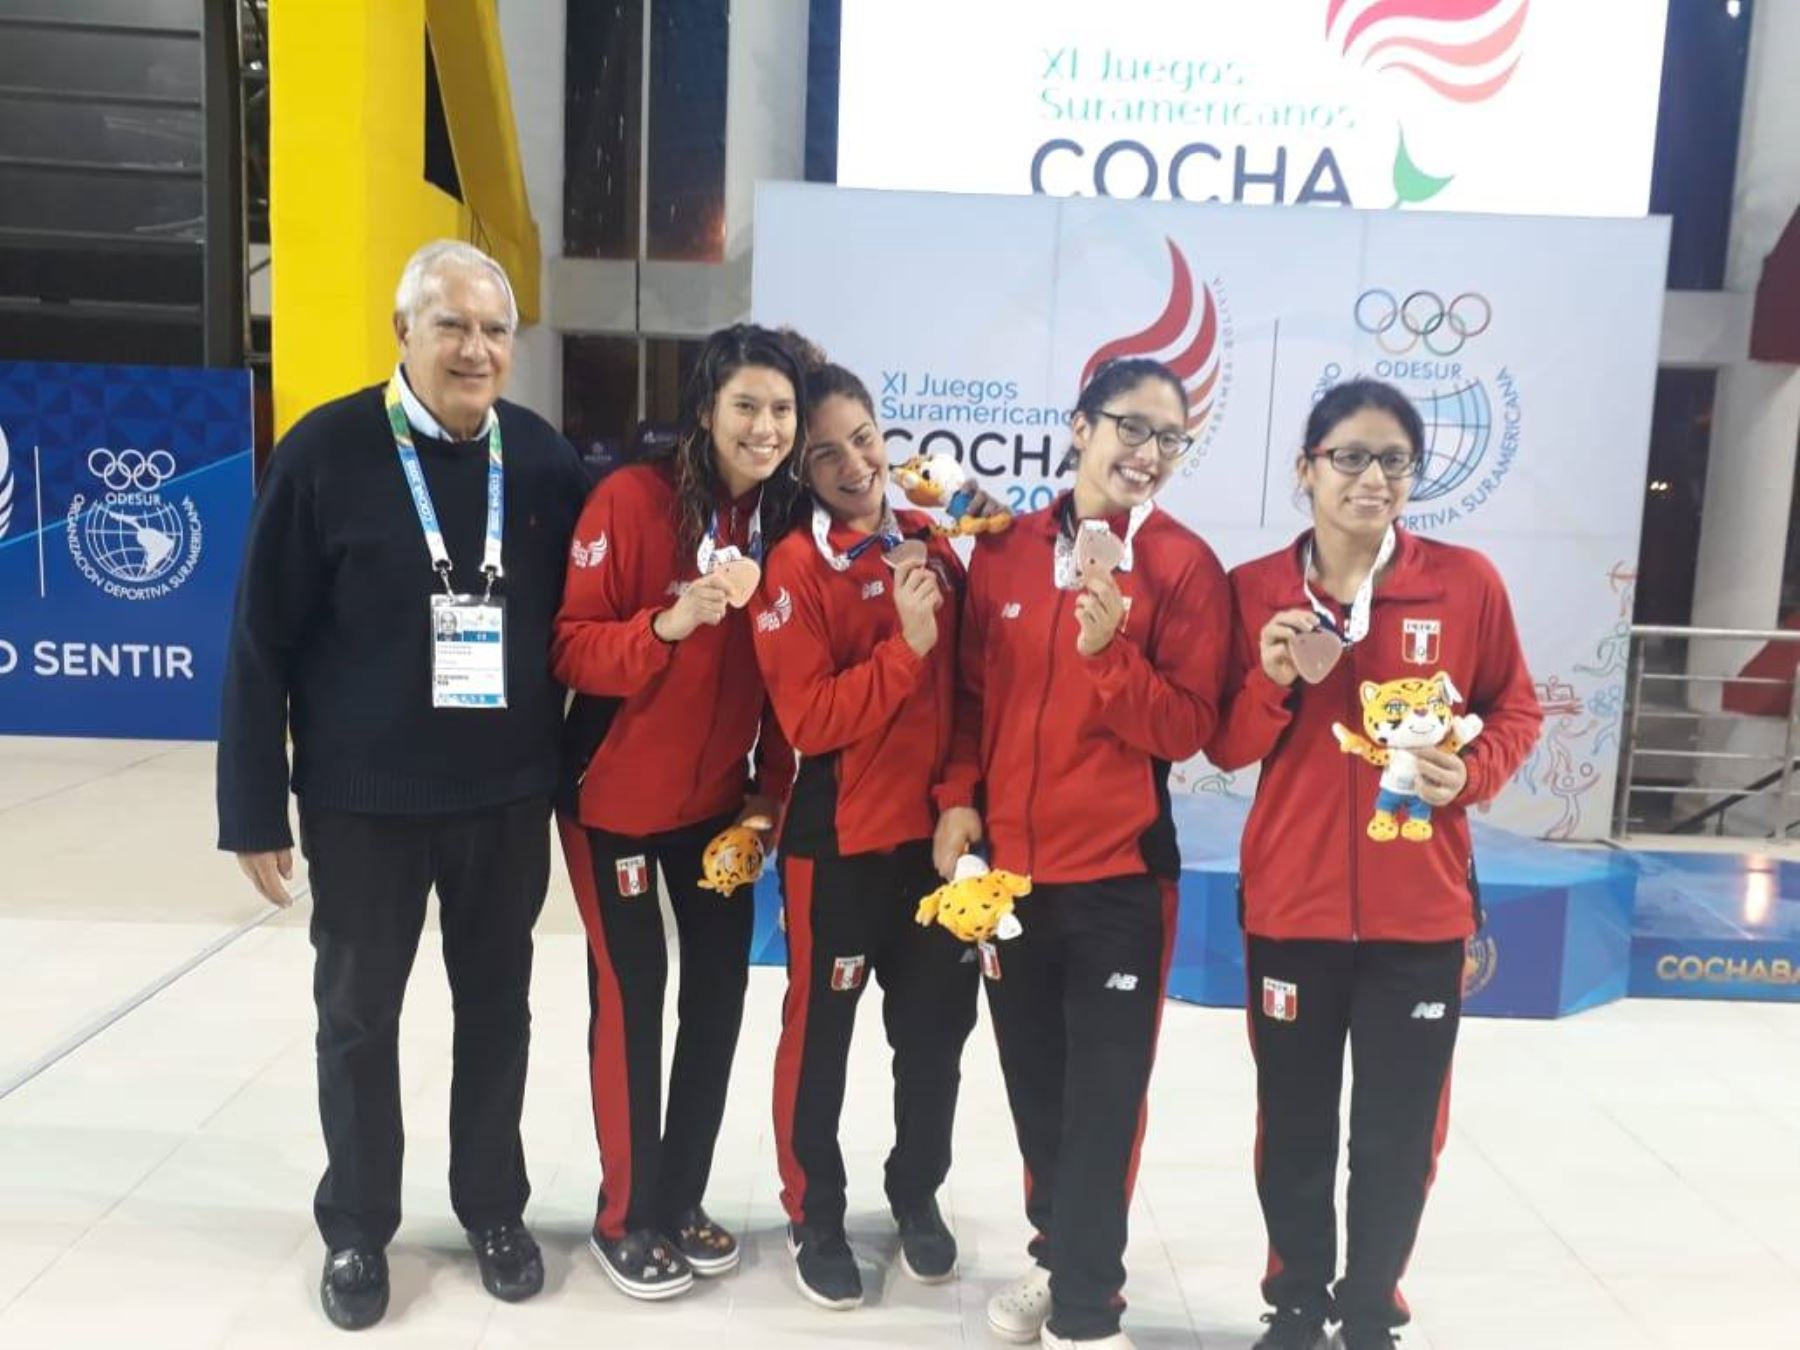 El equipo de natación de 4x200 ganó la medalla de plata en los Juegos Odesur